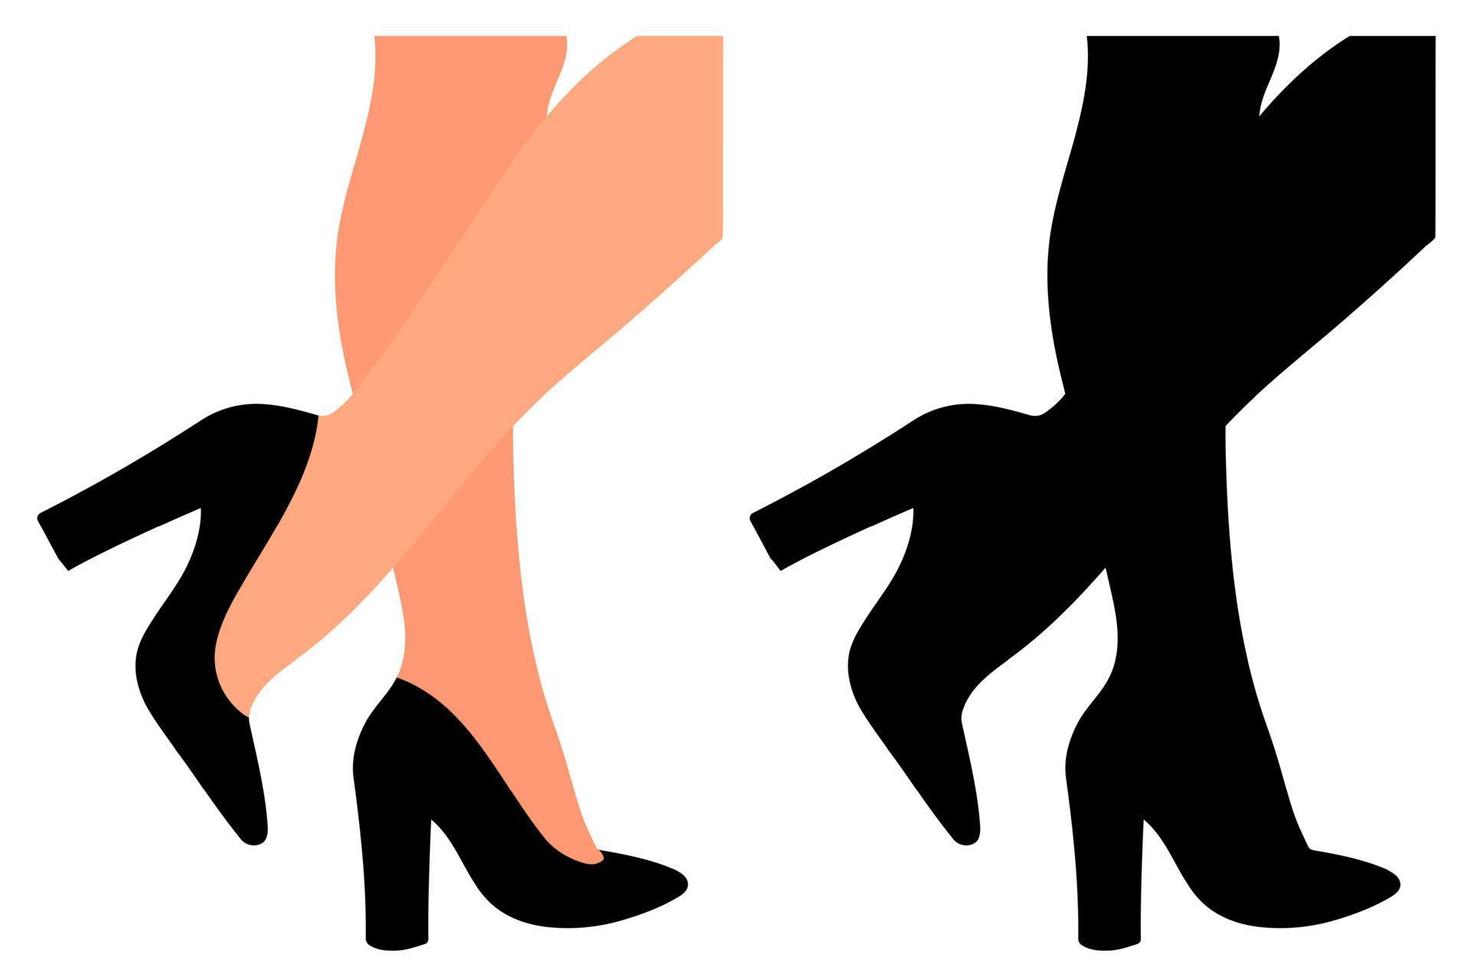 silueta de zapatos de tacón alto en piernas femeninas. modelo de zapato de mujer. accesorio elegante vector